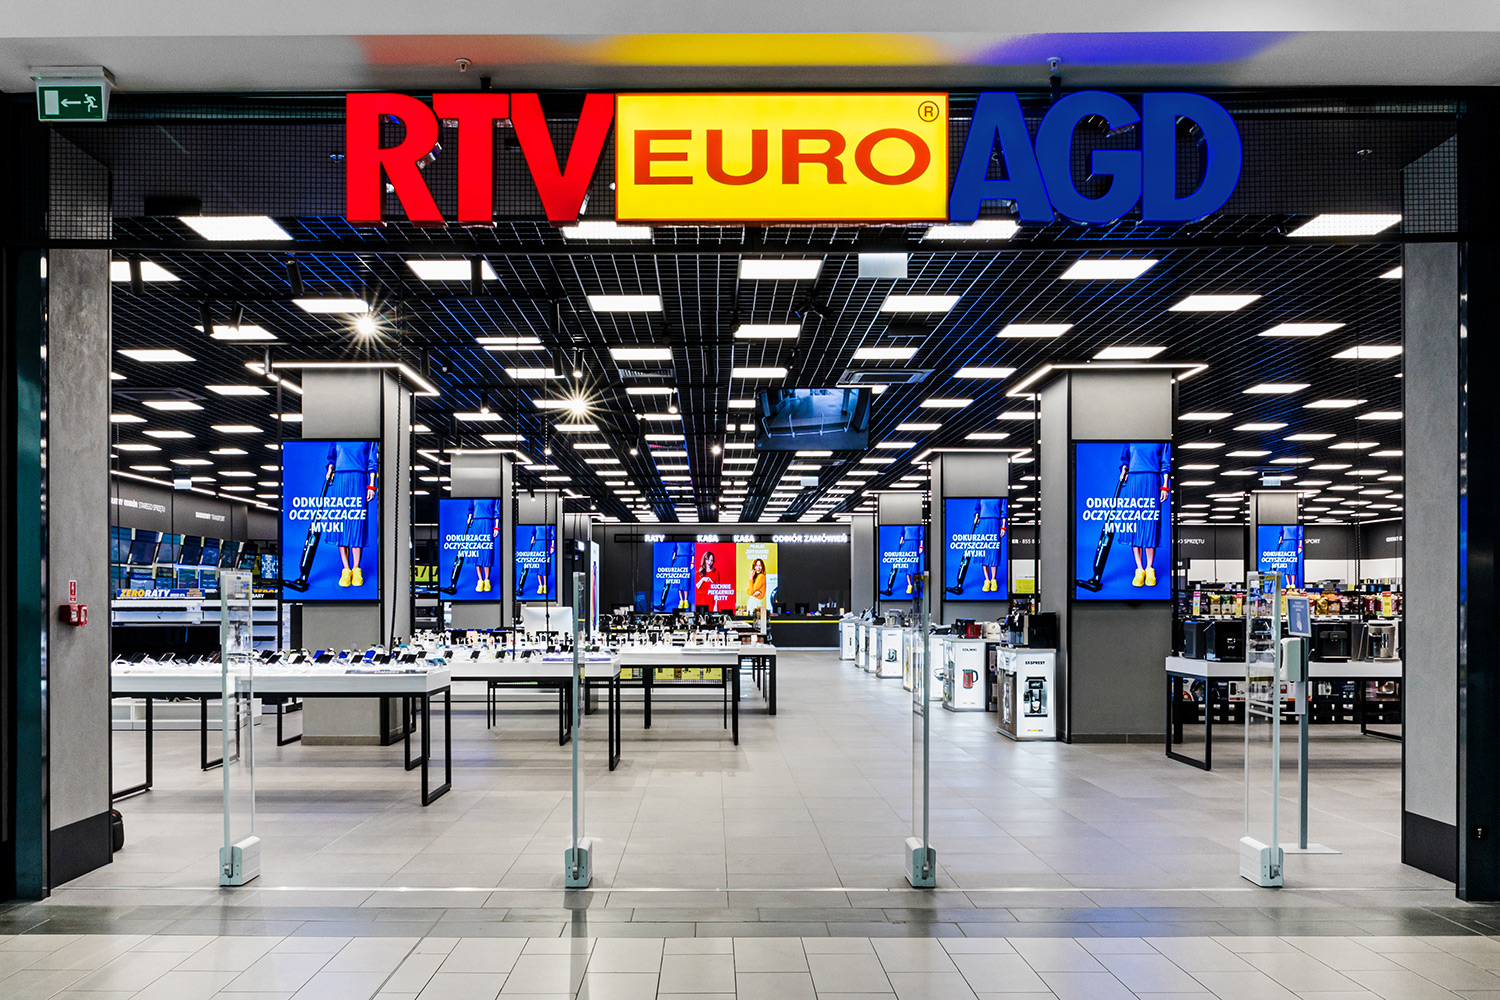 Teraz przez 6 dni! Limitowane superokazje w RTV EURO AGD. - Wiadomości